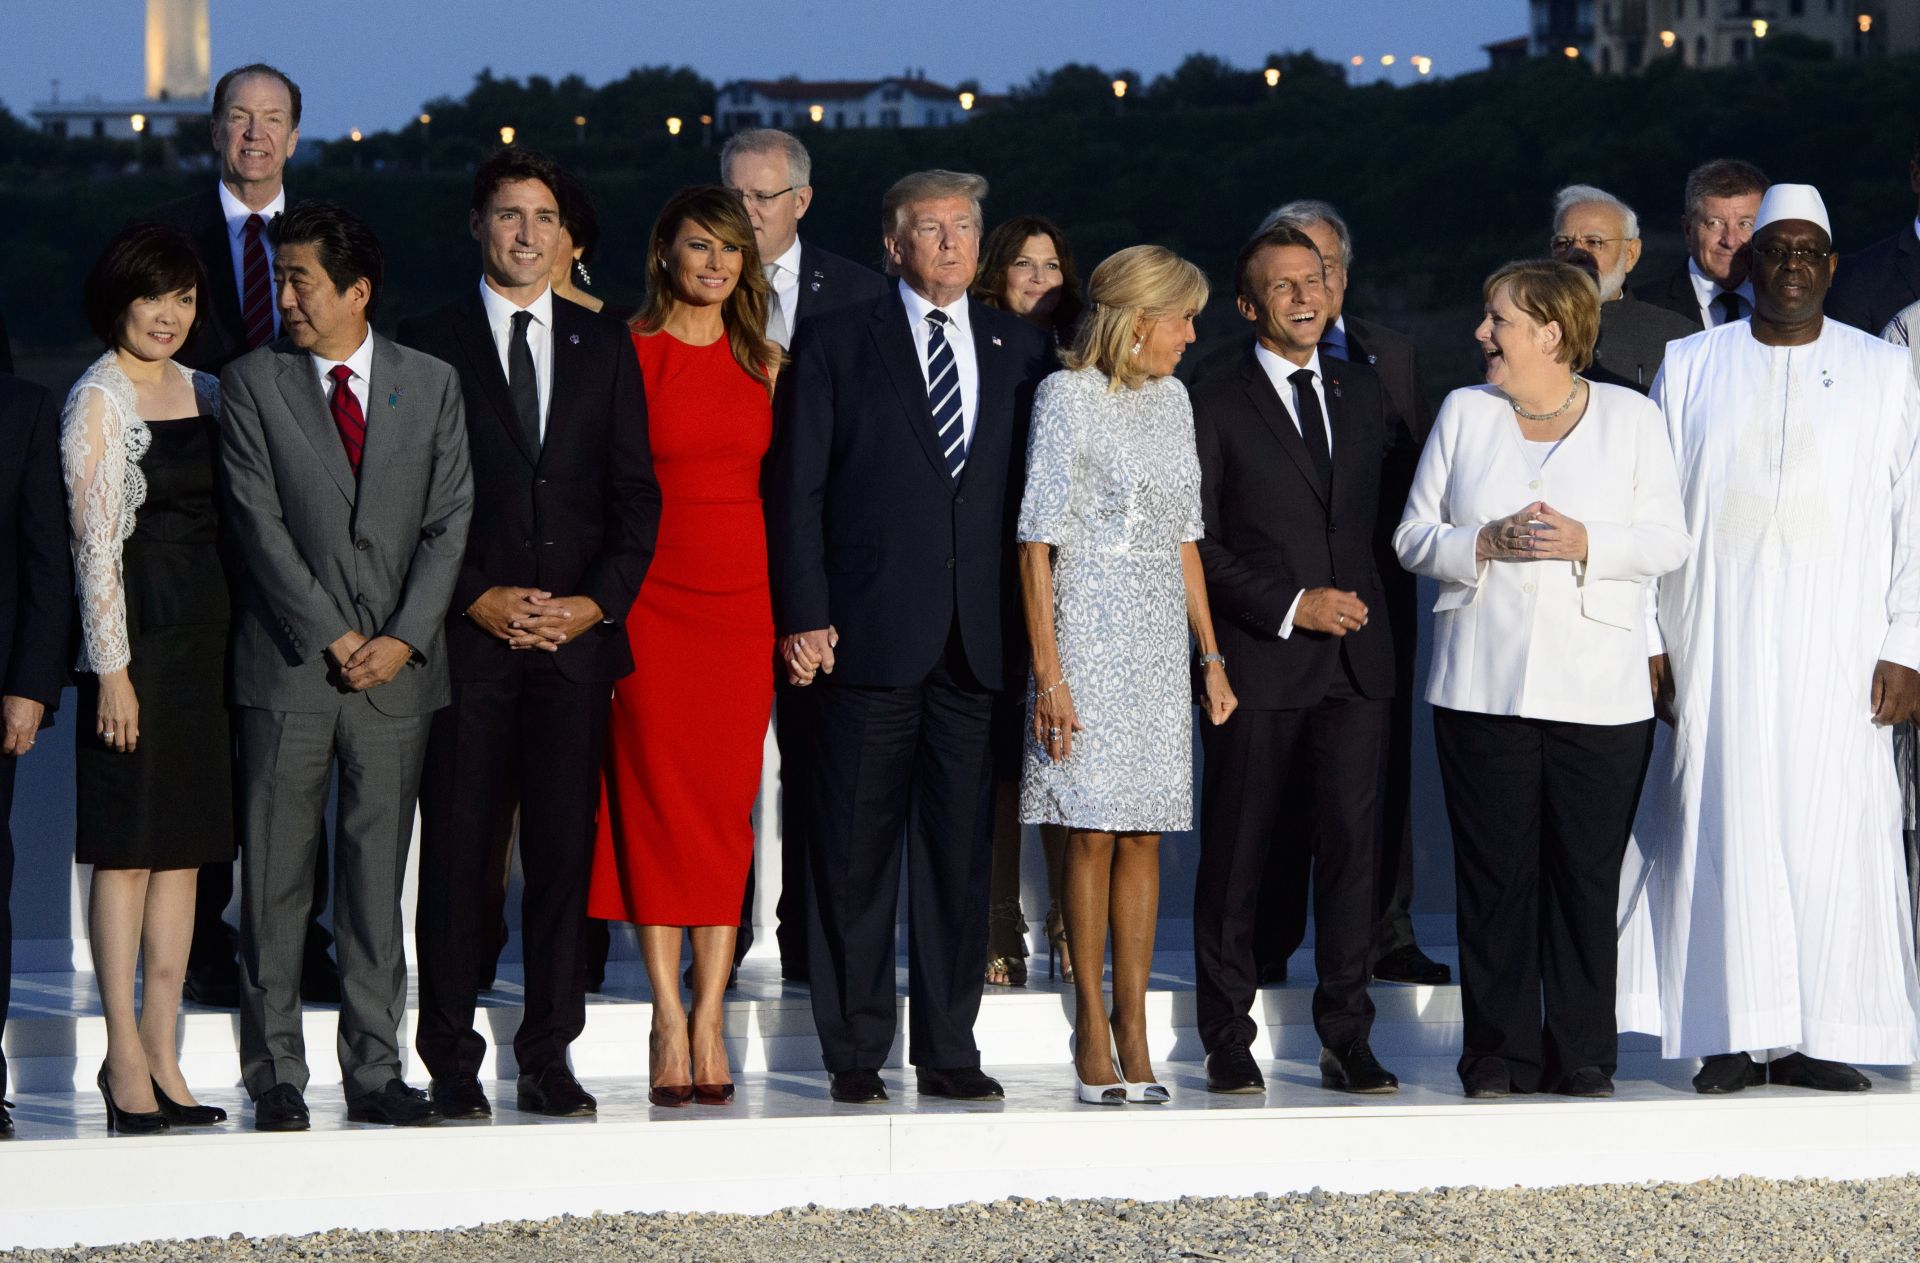 Срещата на Г-7 2019 - Световни лидери и техните съпруги